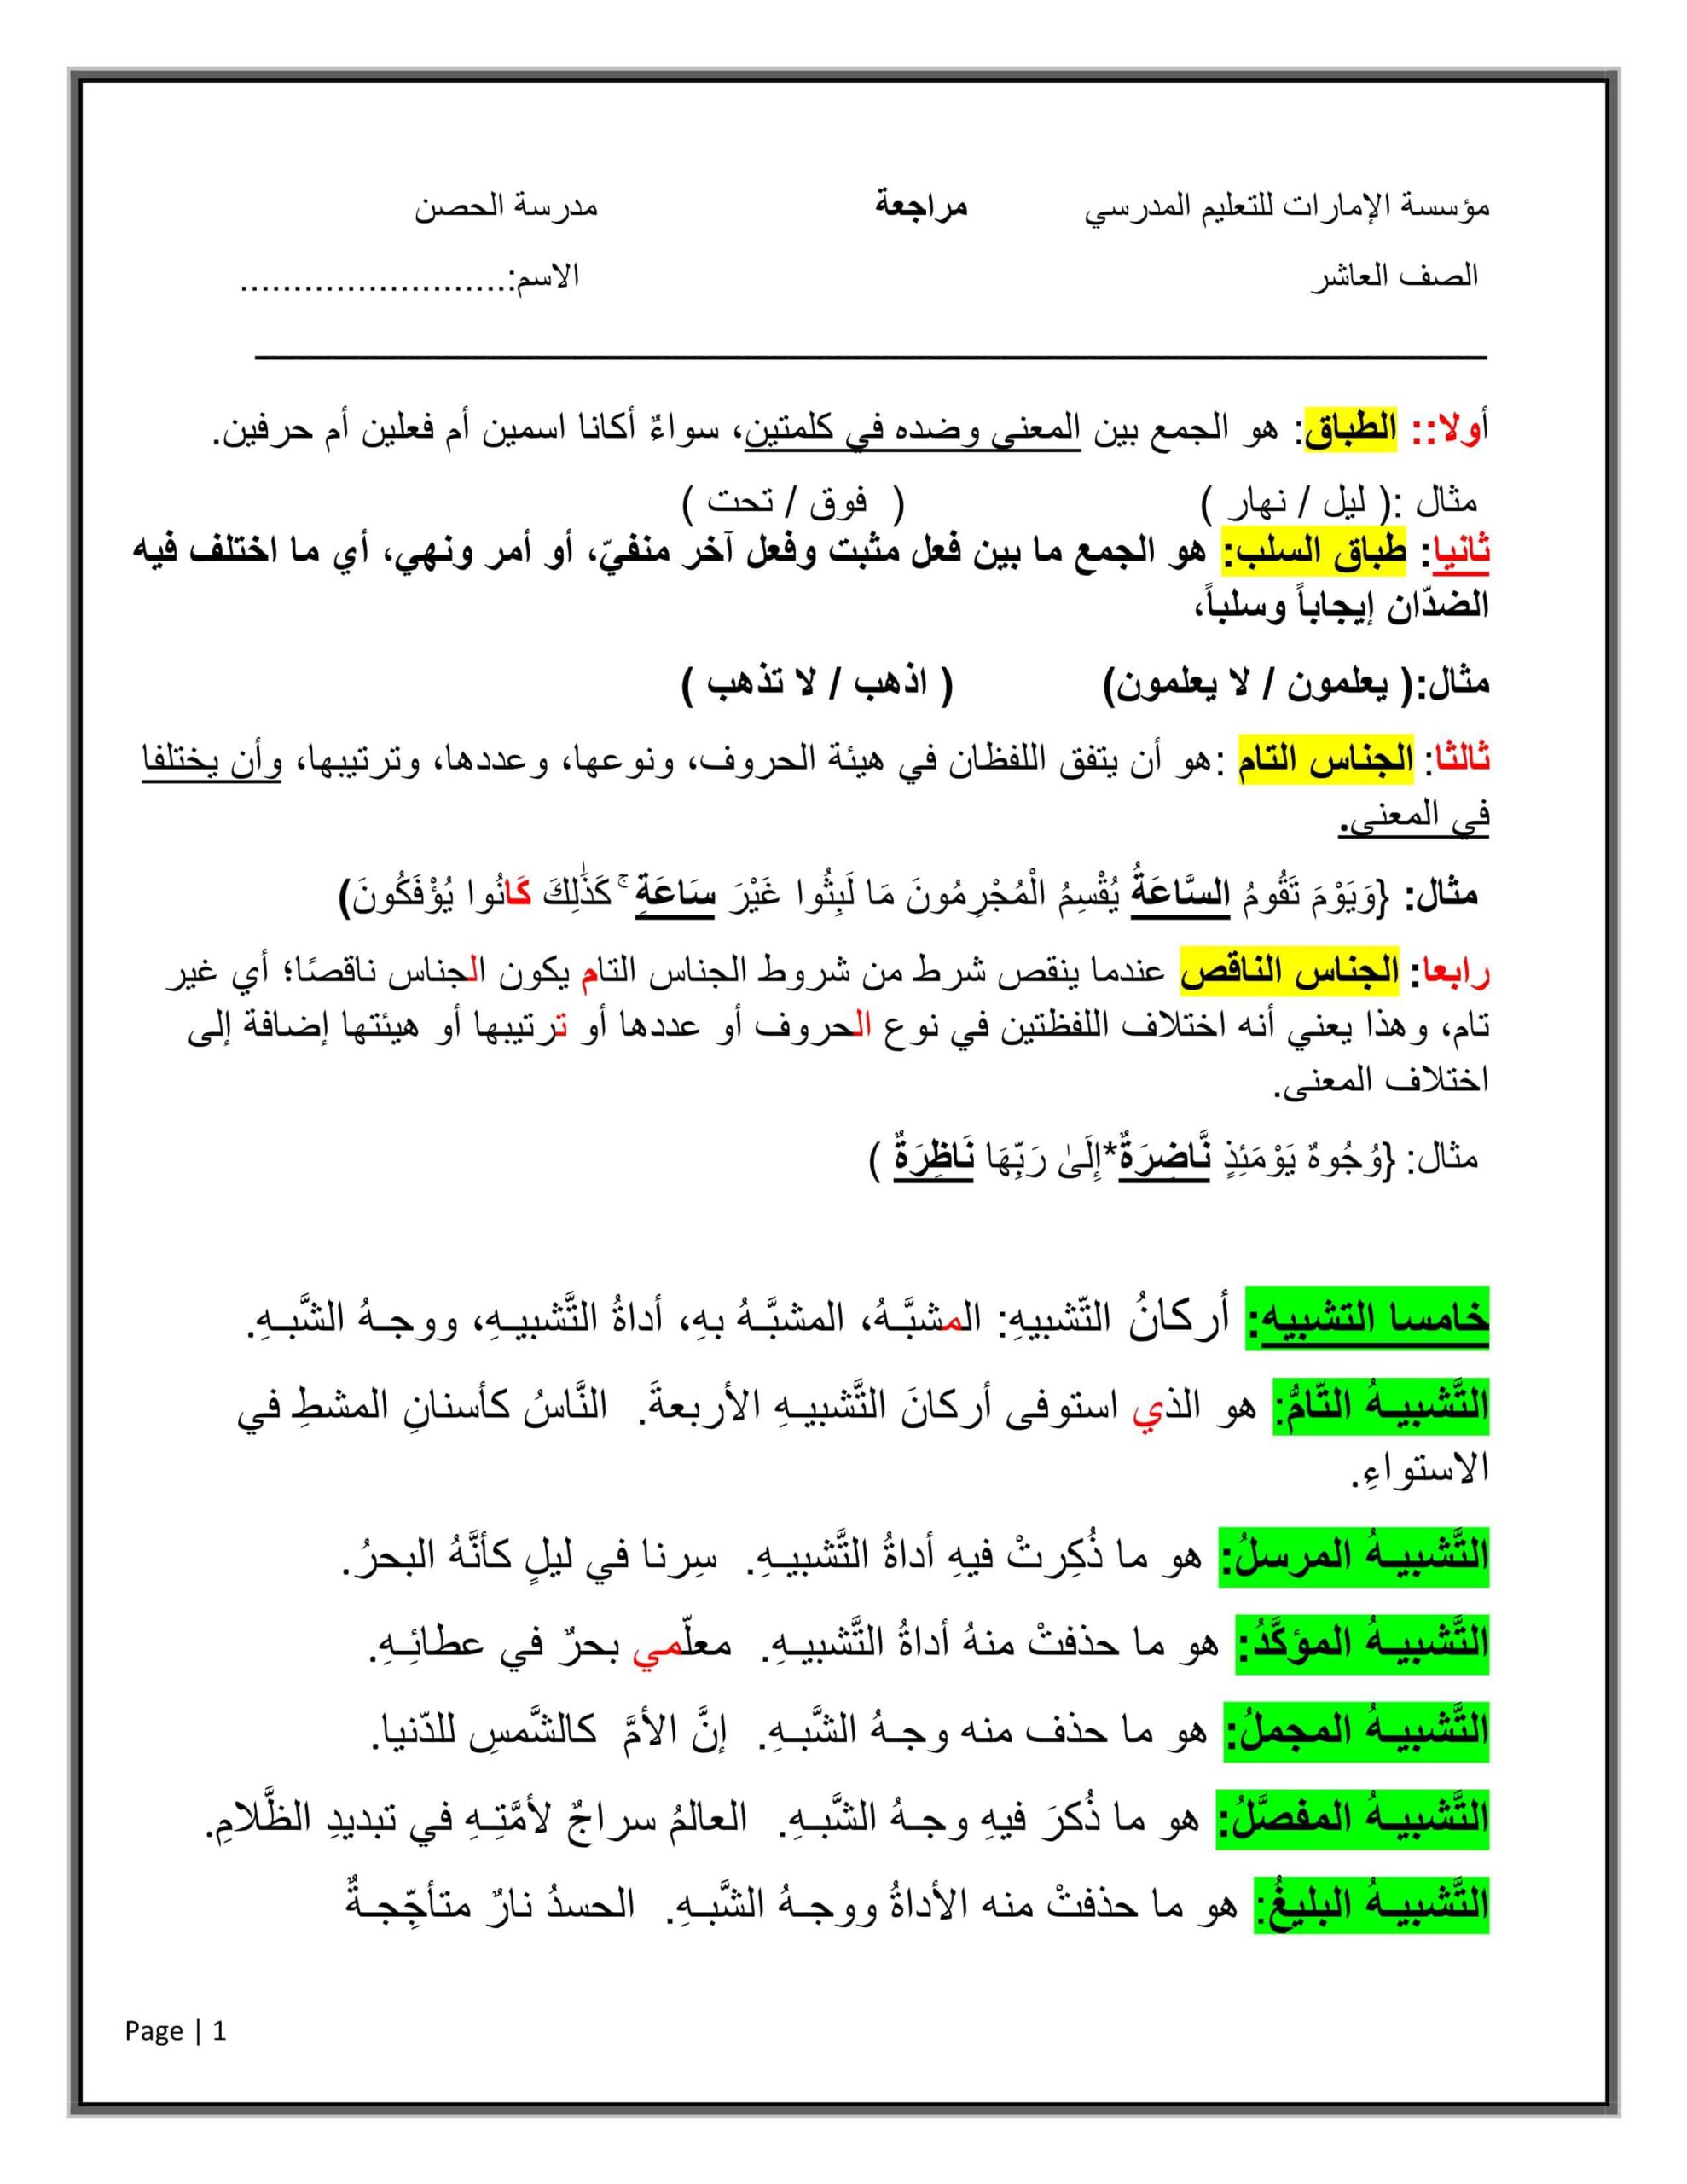 أوراق عمل مراجعة عامة اللغة العربية الصف العاشر